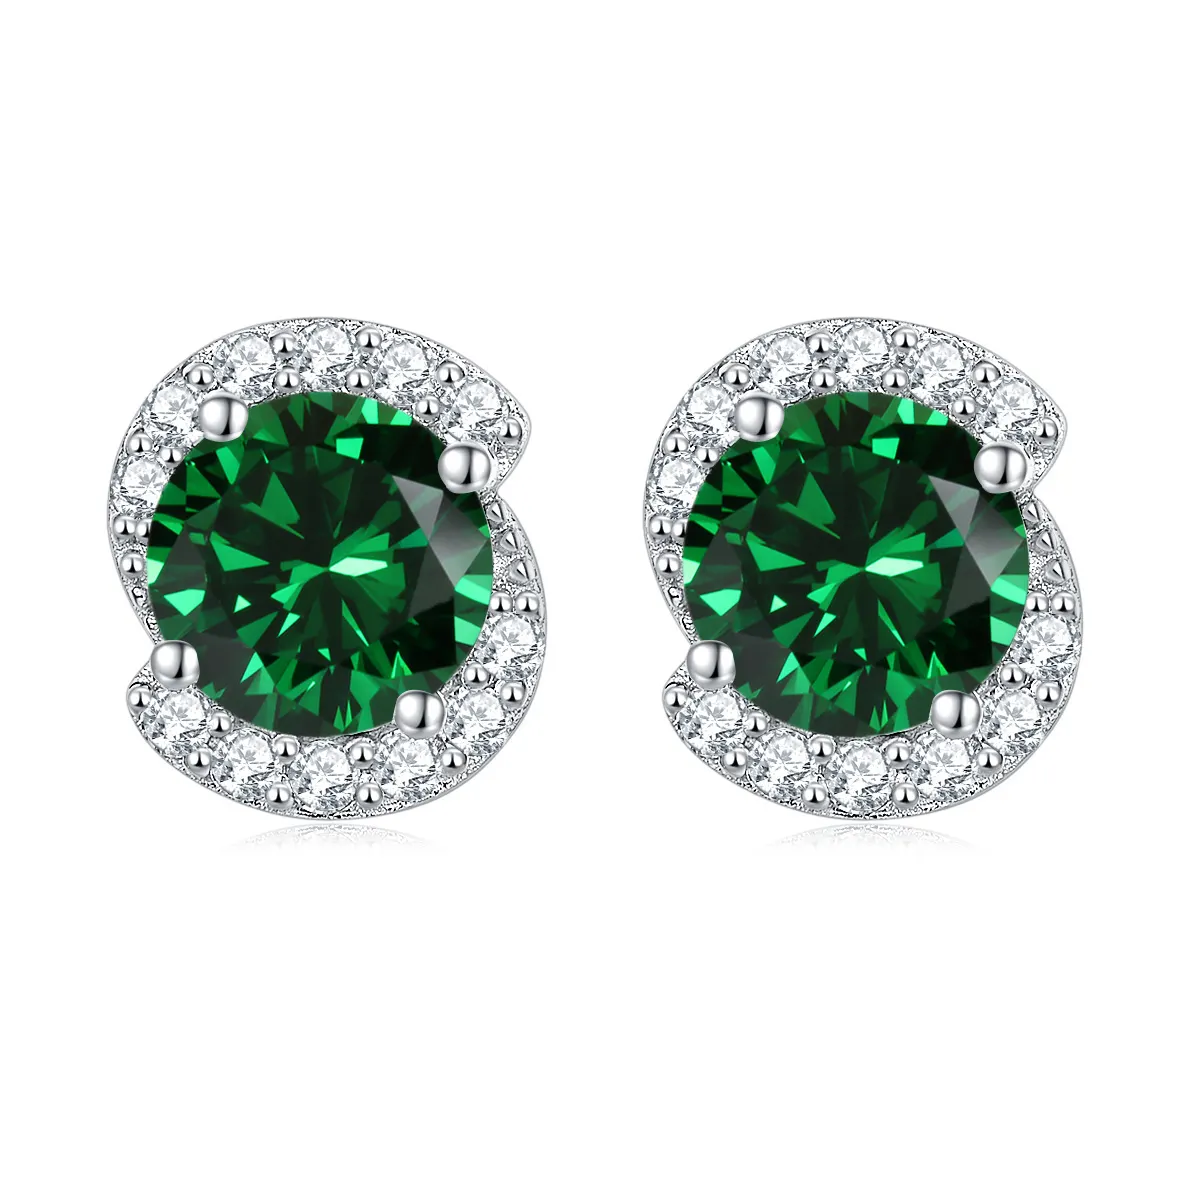 Fashion Jewelry 925 Sterling Silver Emerald Cubic Zircon Birthstone Earrings